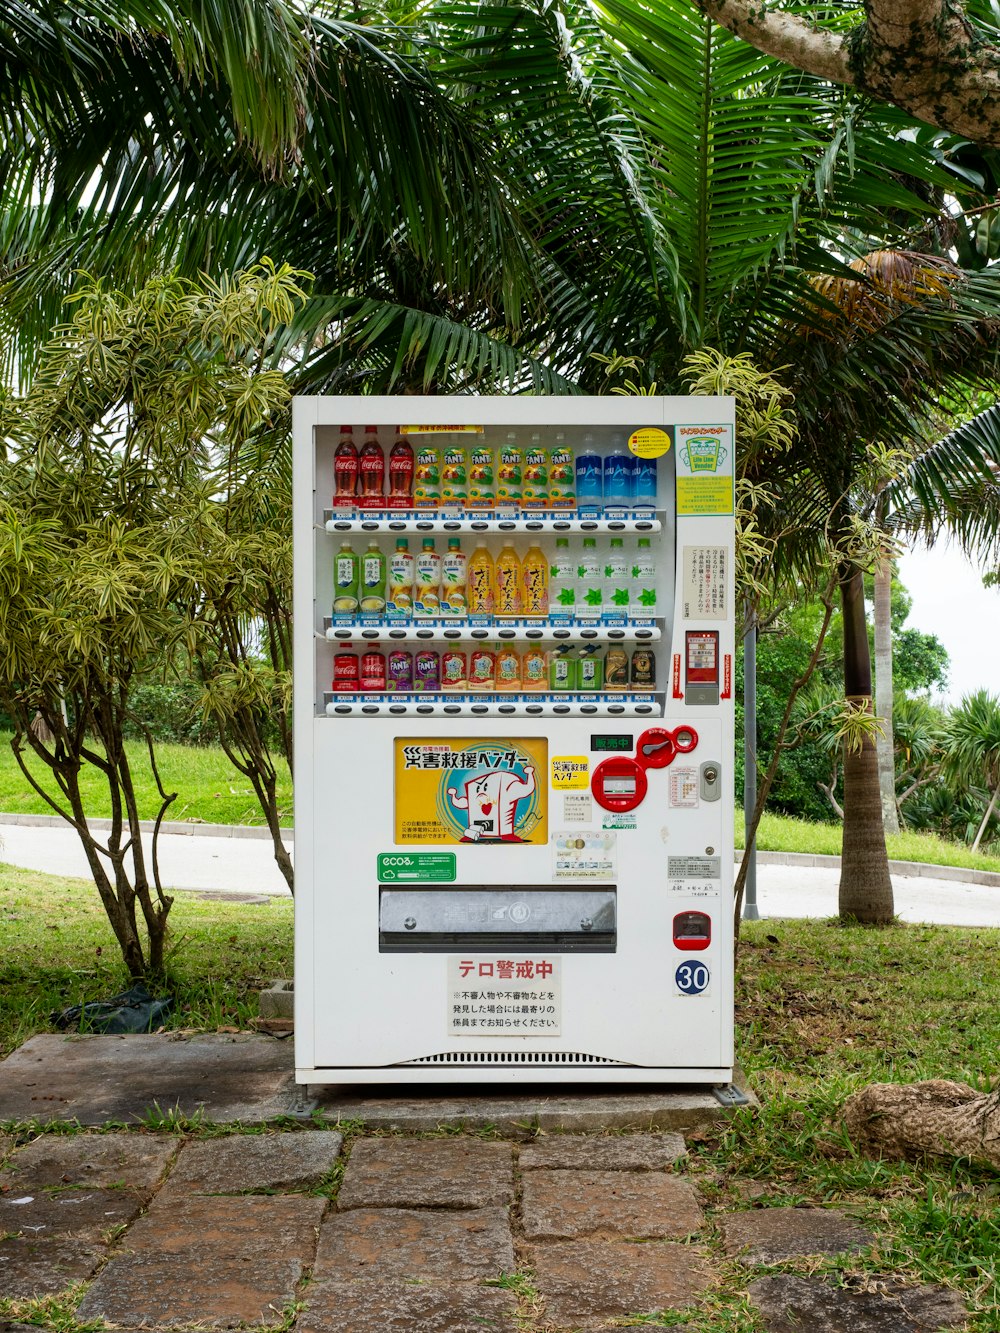 Ein Automat mitten in einem Park